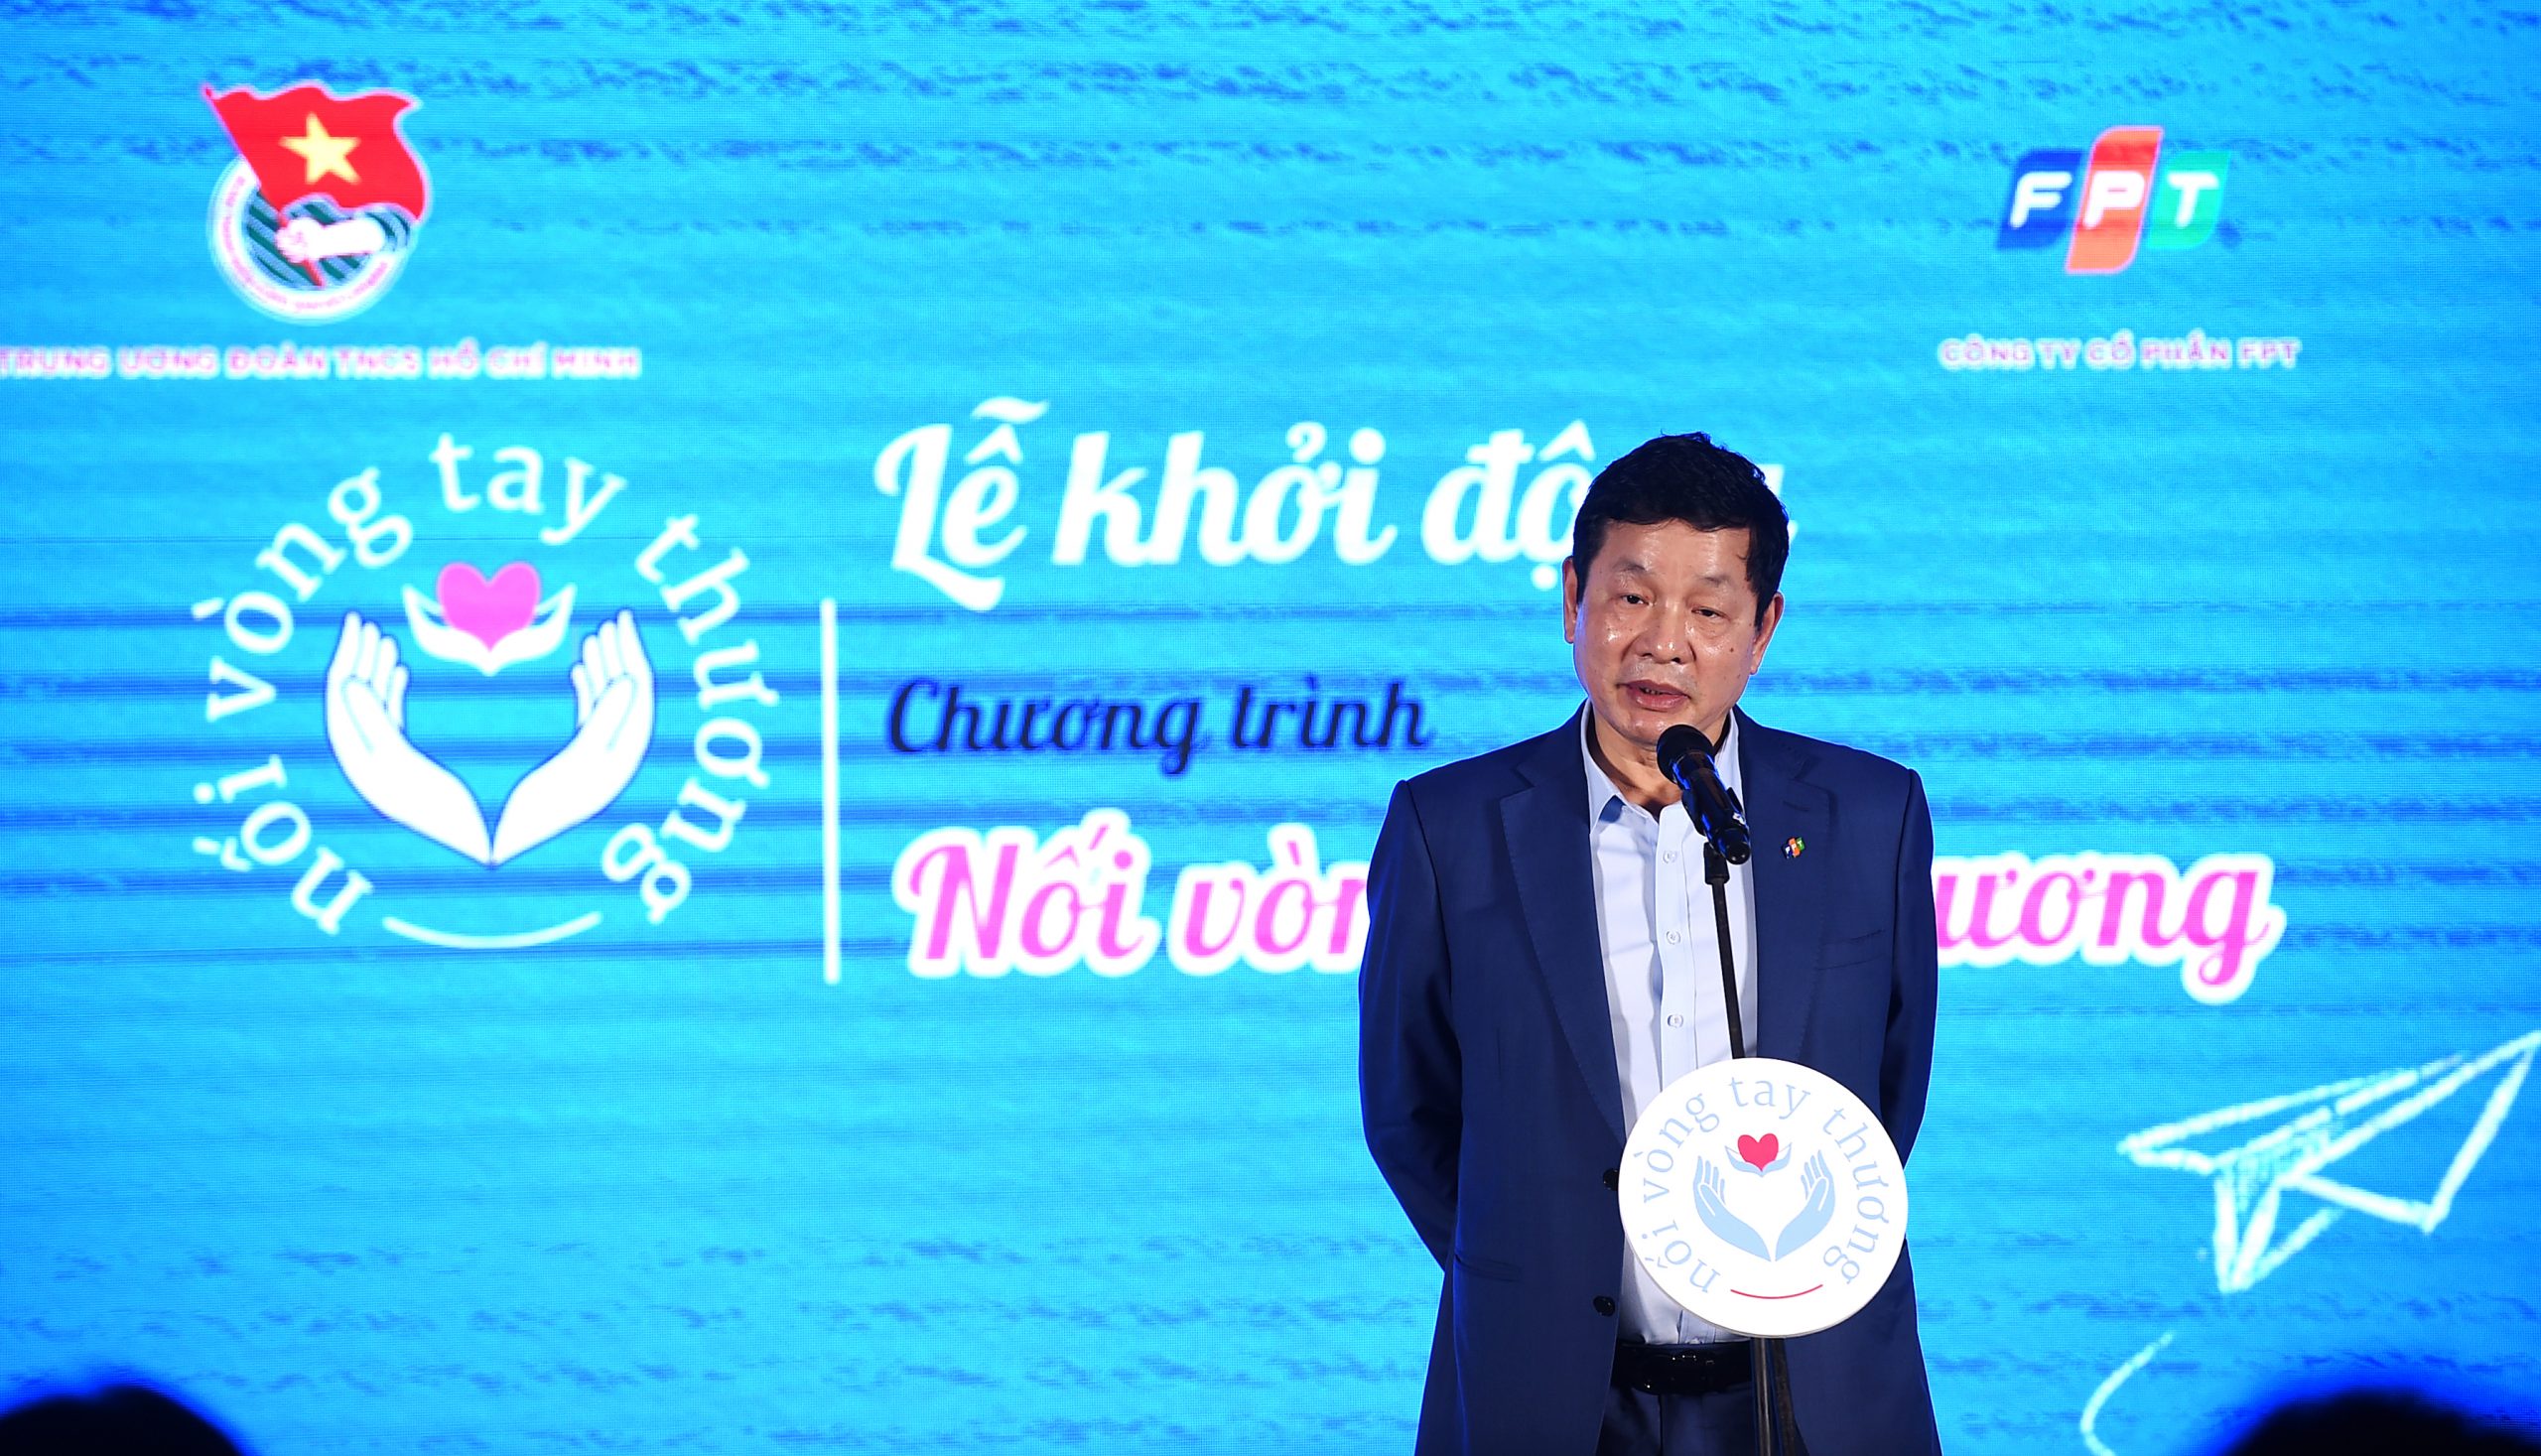 Ông Trương Gia Bình, Chủ tịch HĐQT Tập đoàn FPT chia sẻ tại chương trình Nối vòng tay thương.